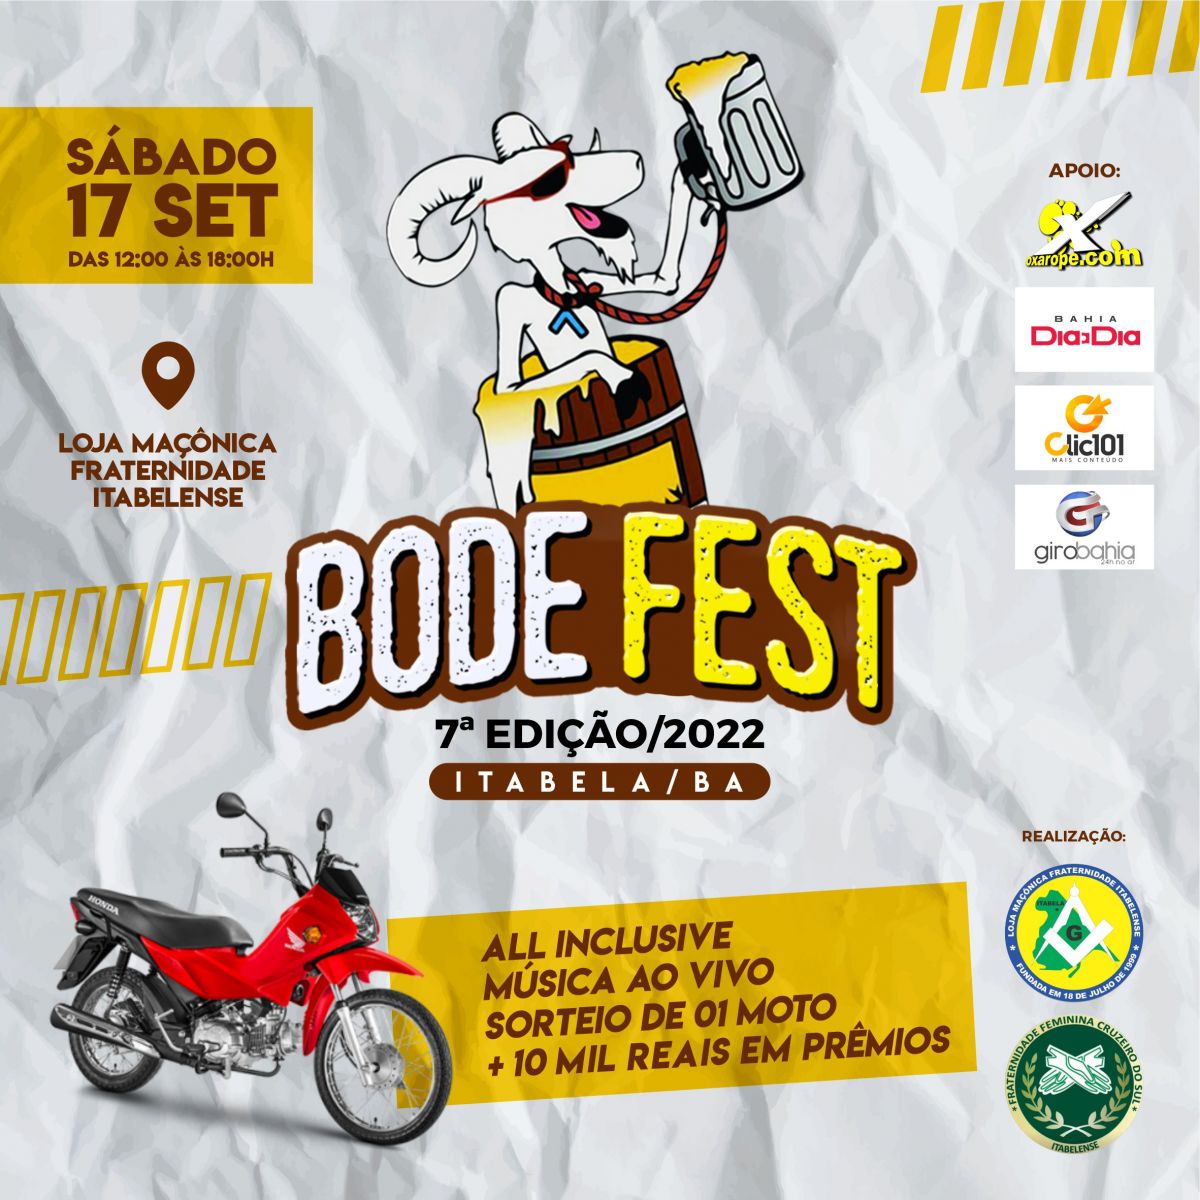 Itabela: Bode Fest terá música ao vivo e sorteio de R$20 mil em prêmios no dia 17 de setembro.(Foto: Divulgação)